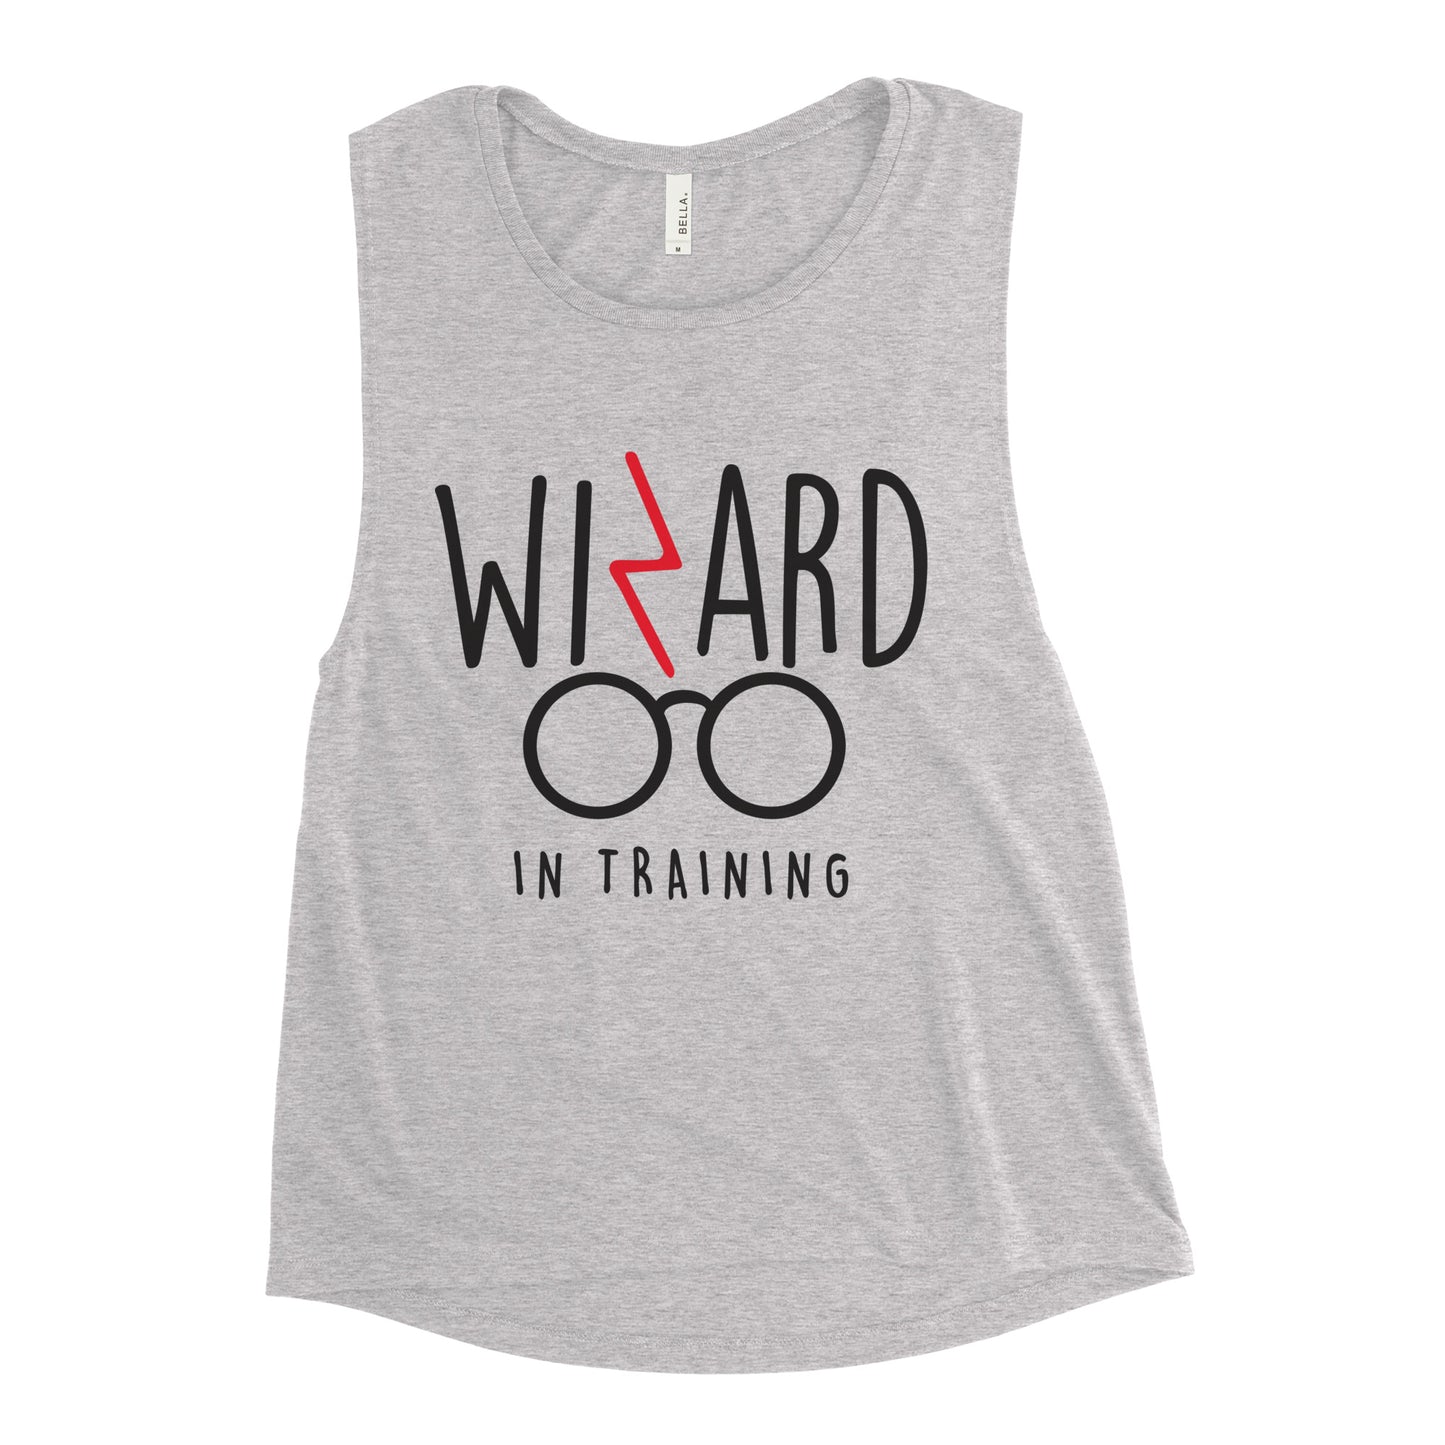 Wizard In Training Women's Muscle Tank